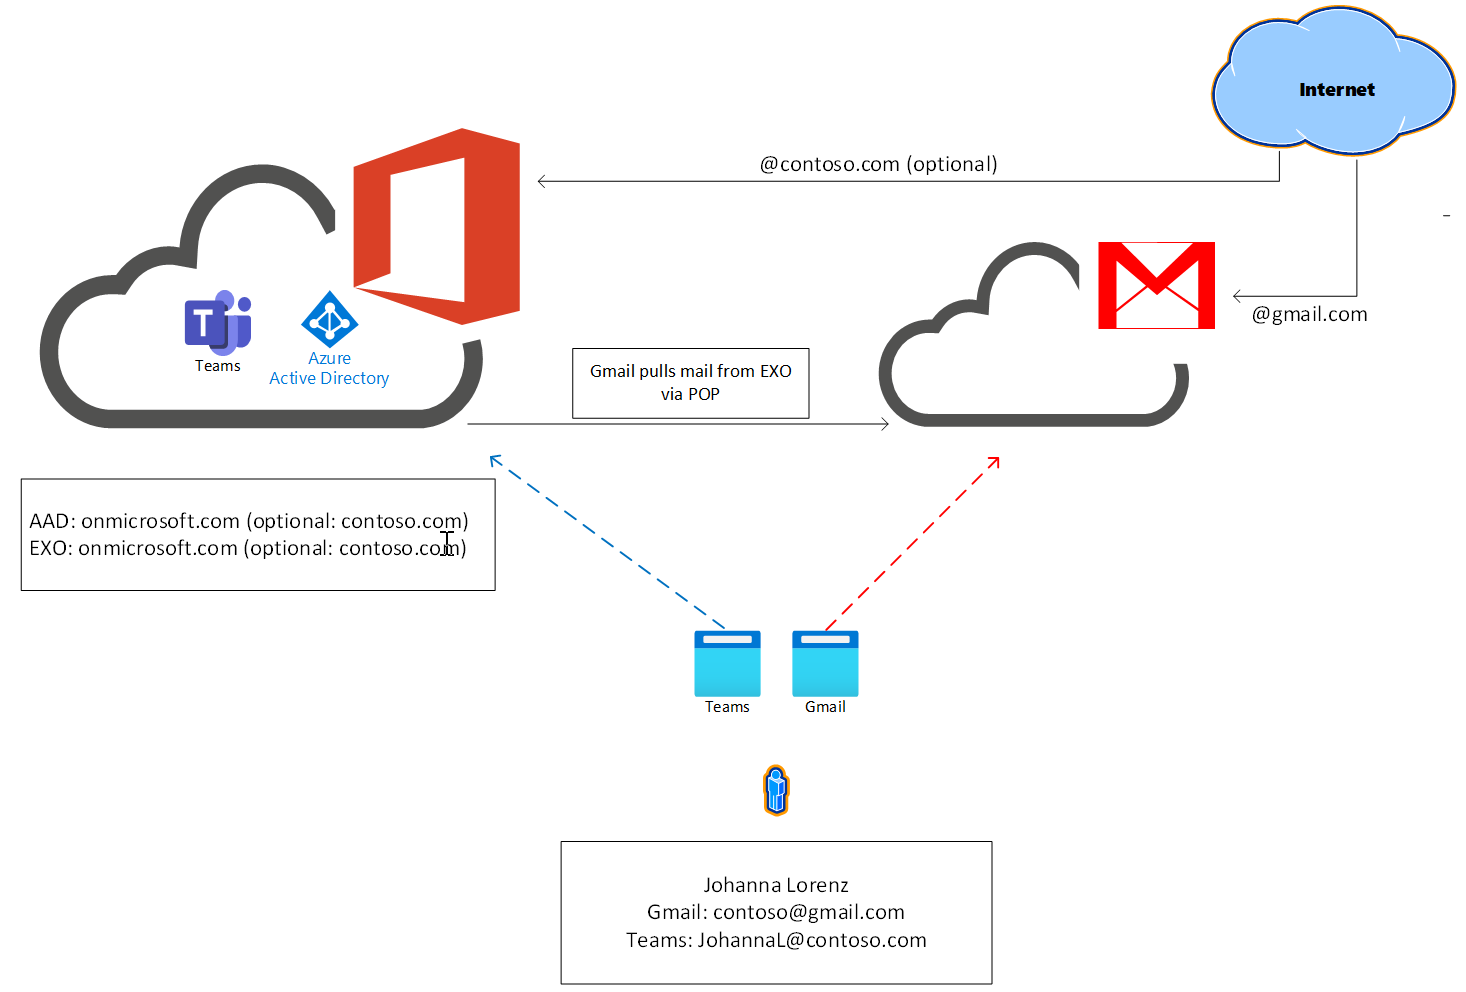 Изображение, написав поток обработки почты между Teams базовый и Gmail